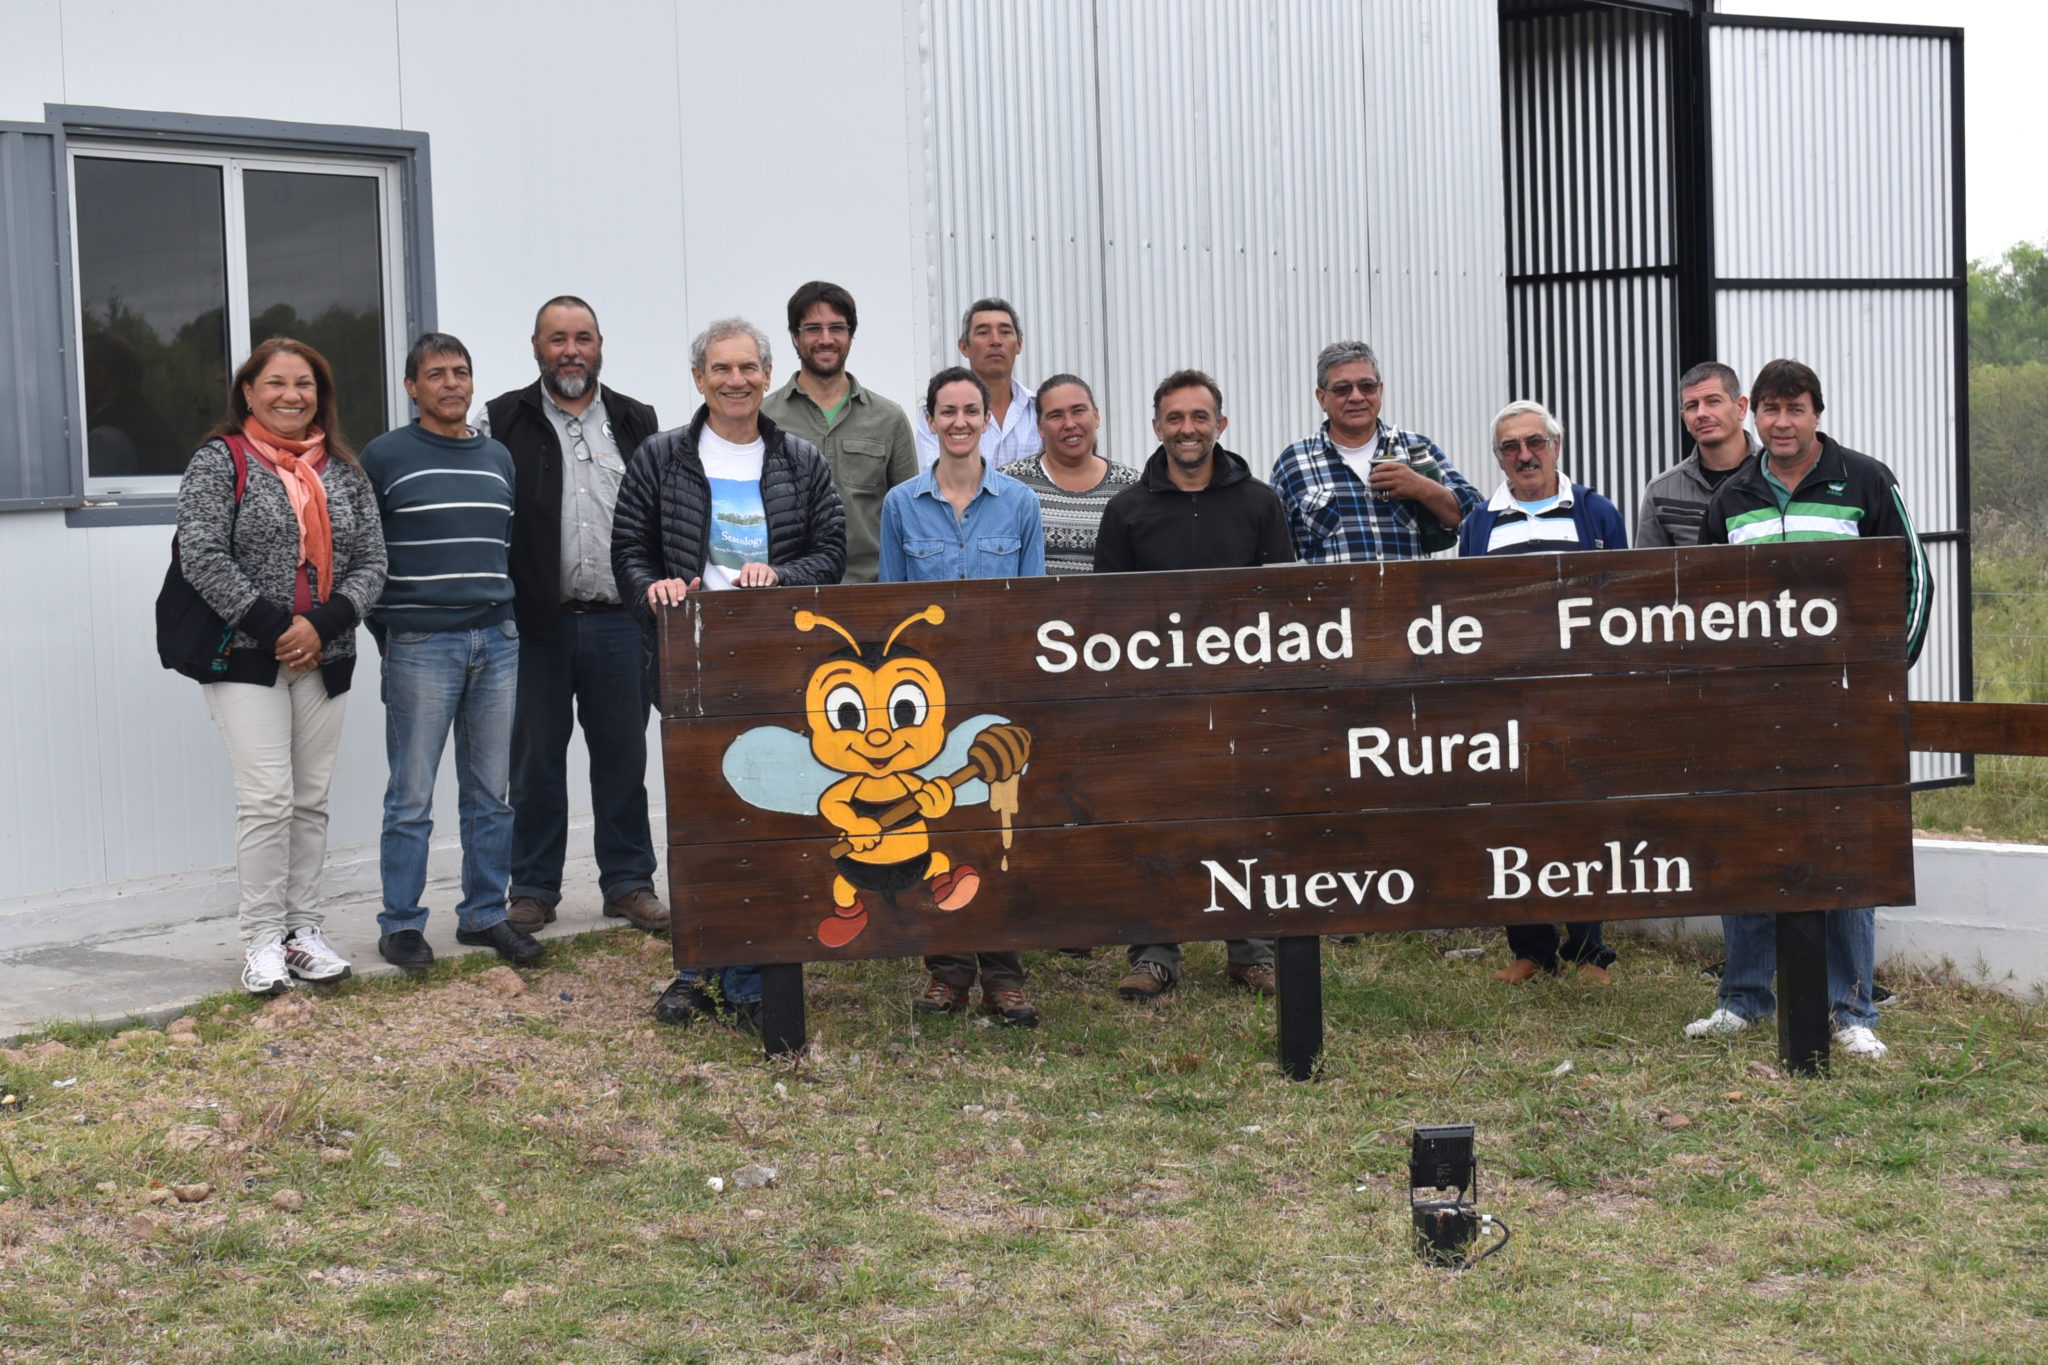 Nuevo Berlin honey processing facility